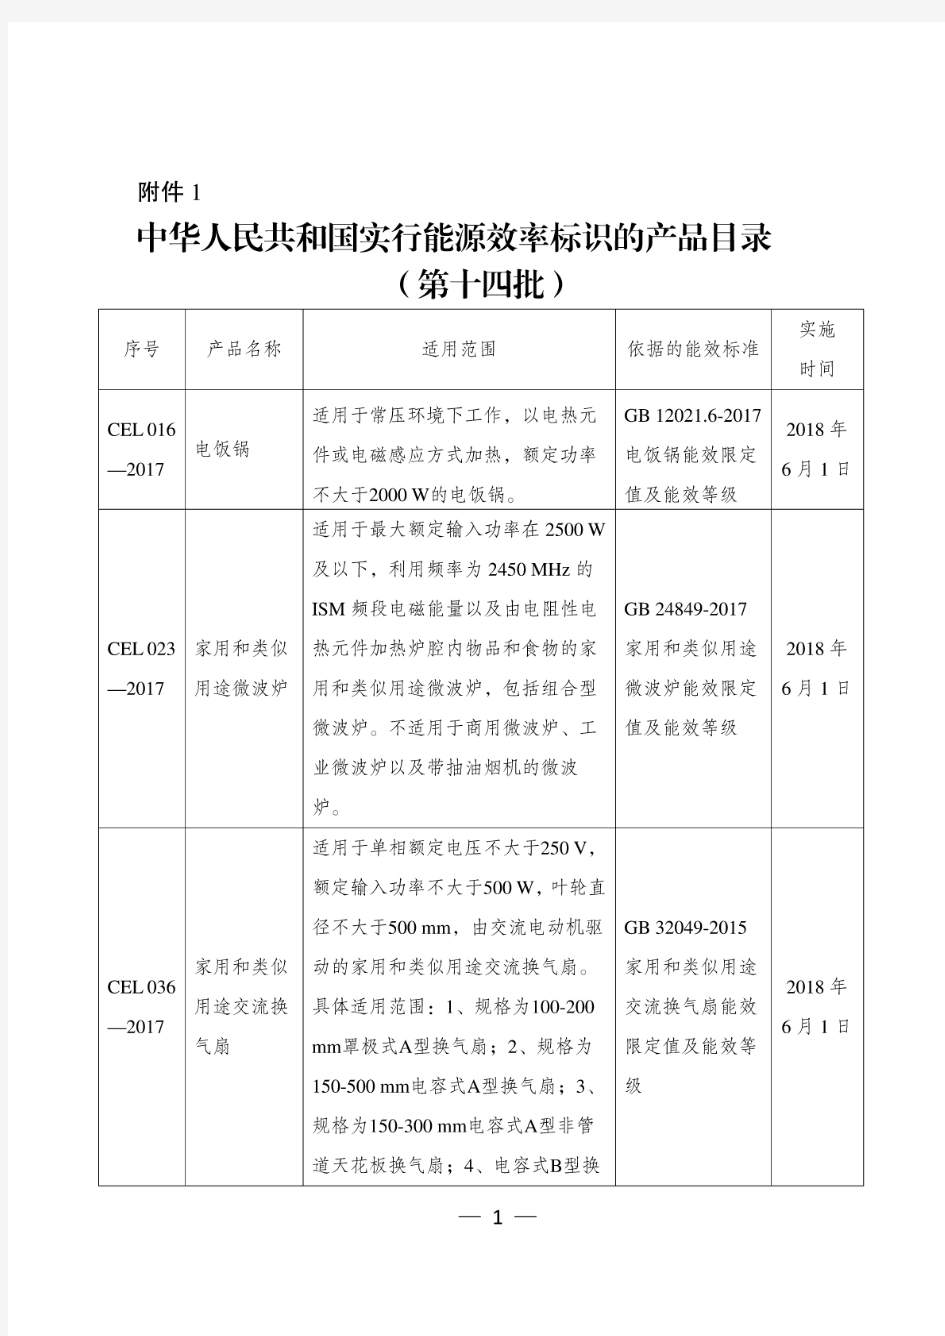 中华人民共和国实行能源效率标识的产品目录(第十四批)